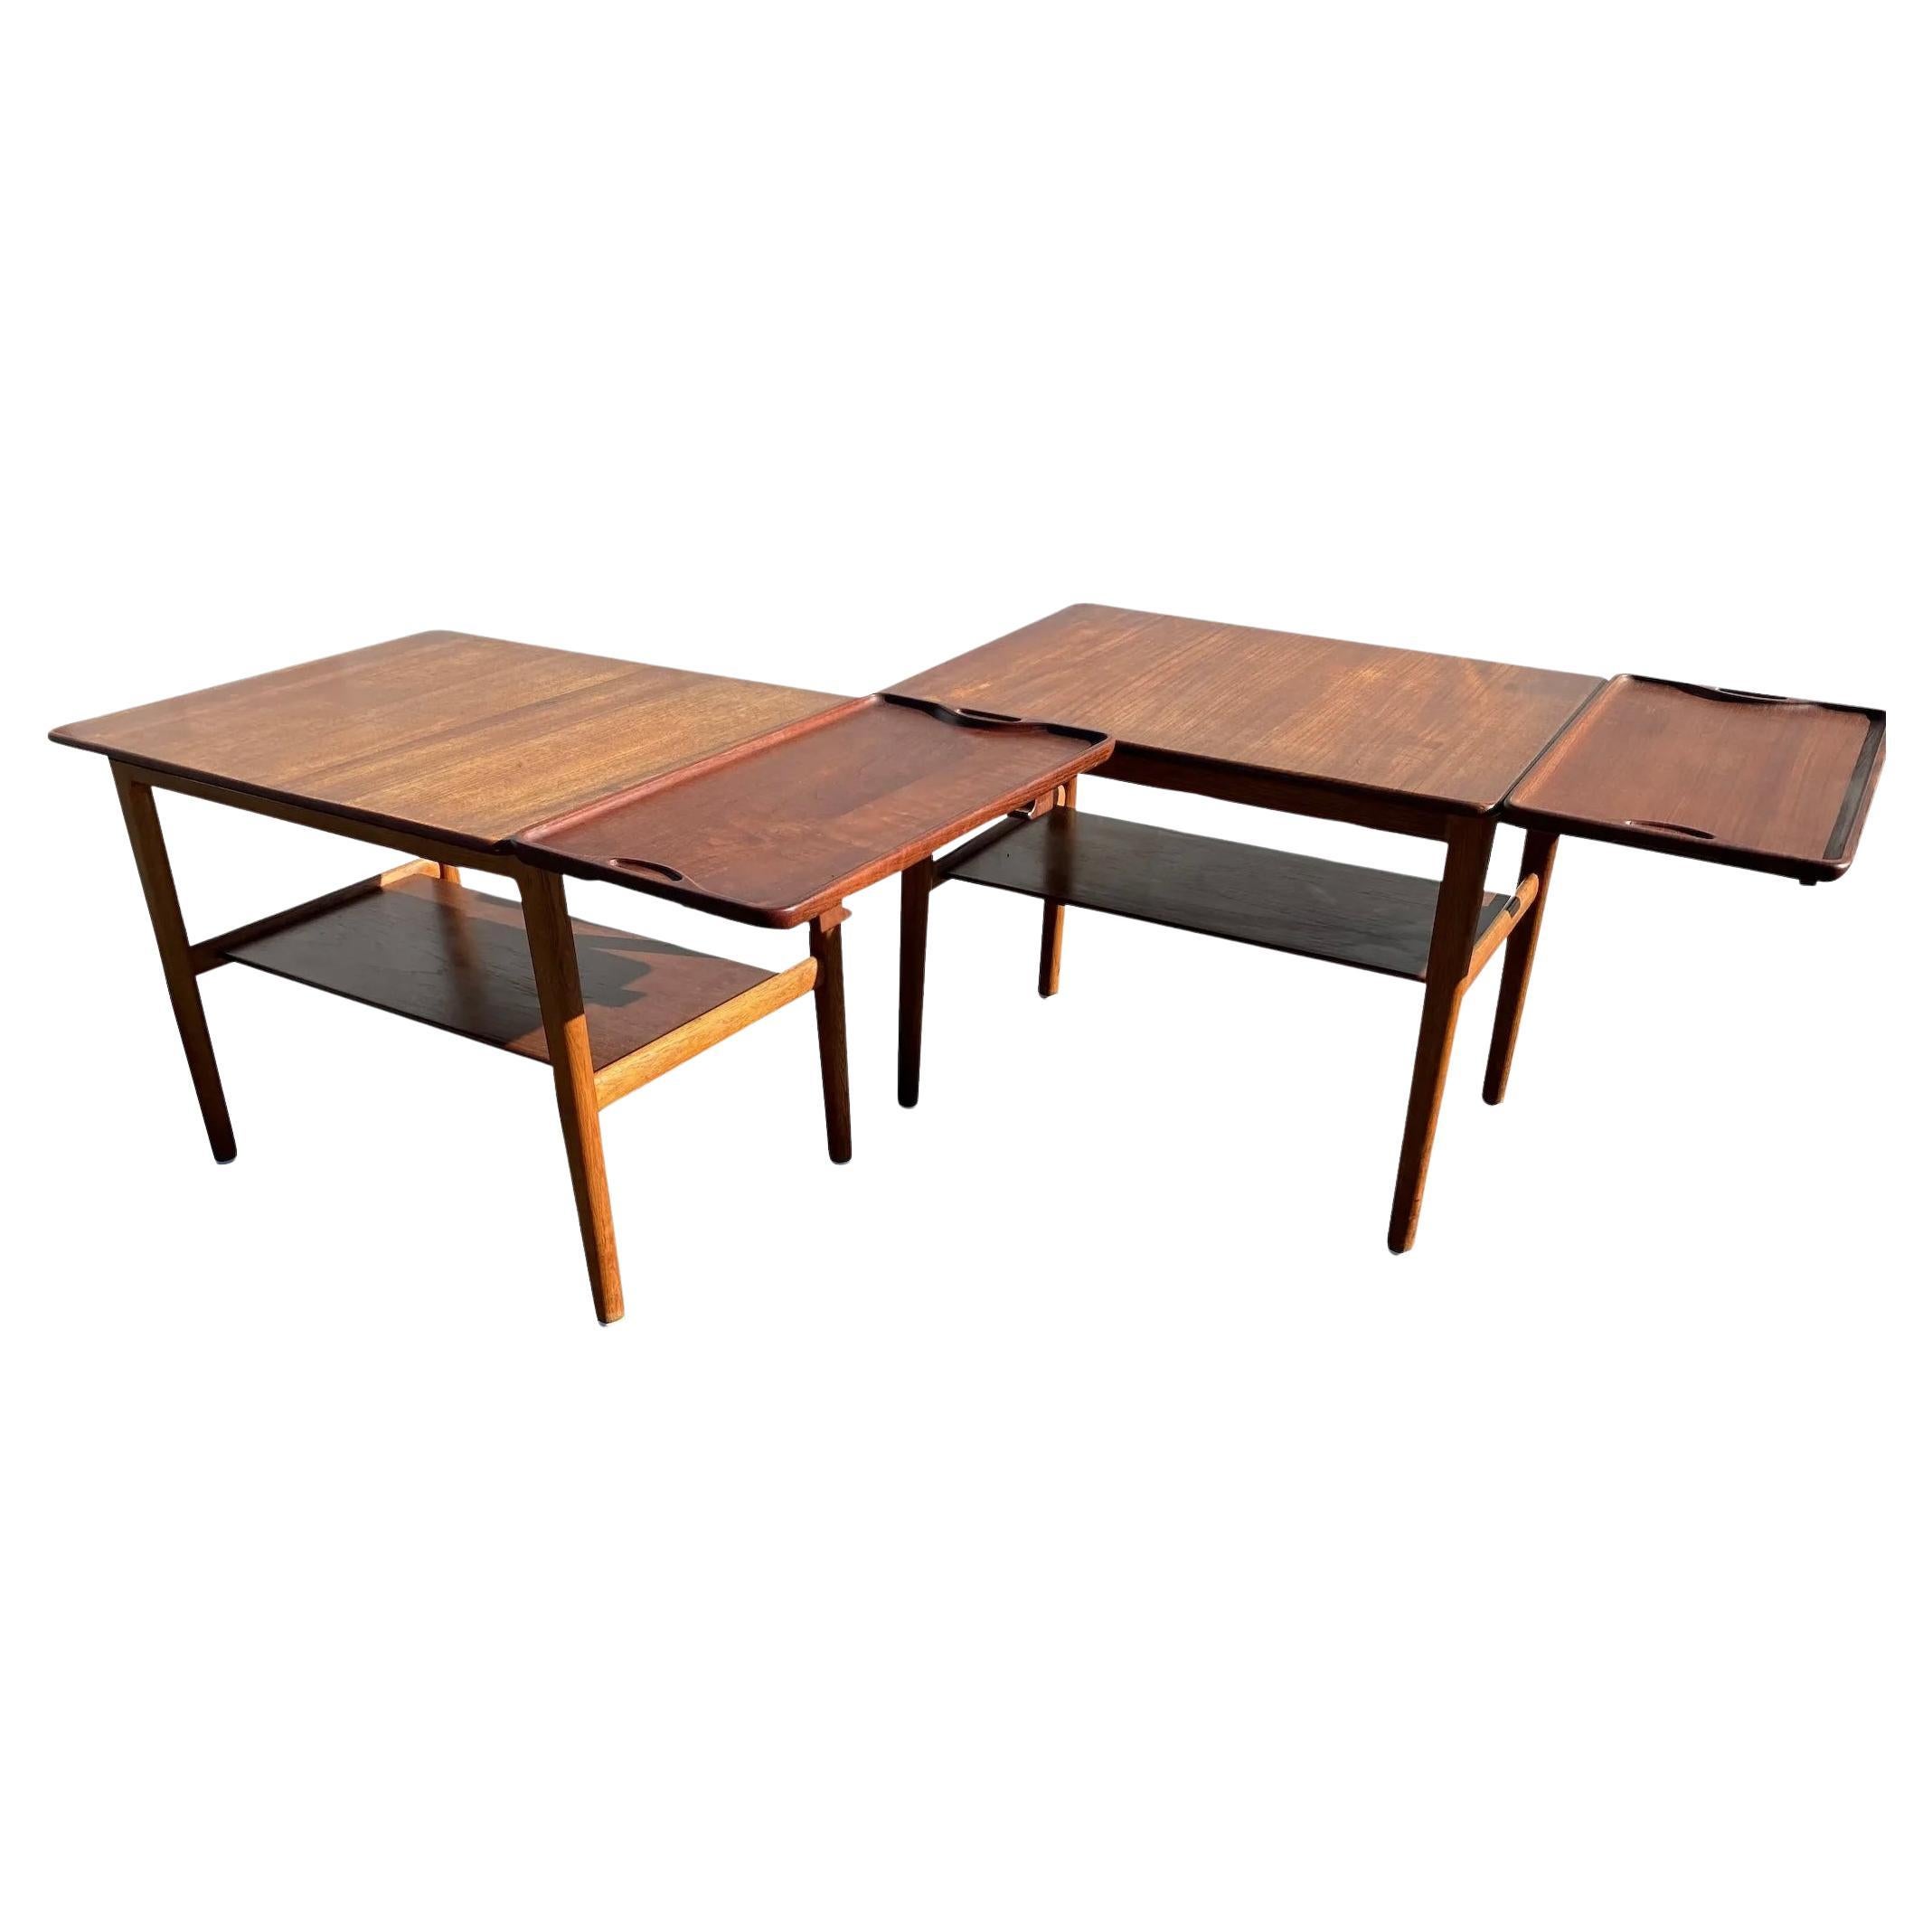 Johannes Hansen Hans Wegner Danish Modern Teak Tables with Trays For Sale